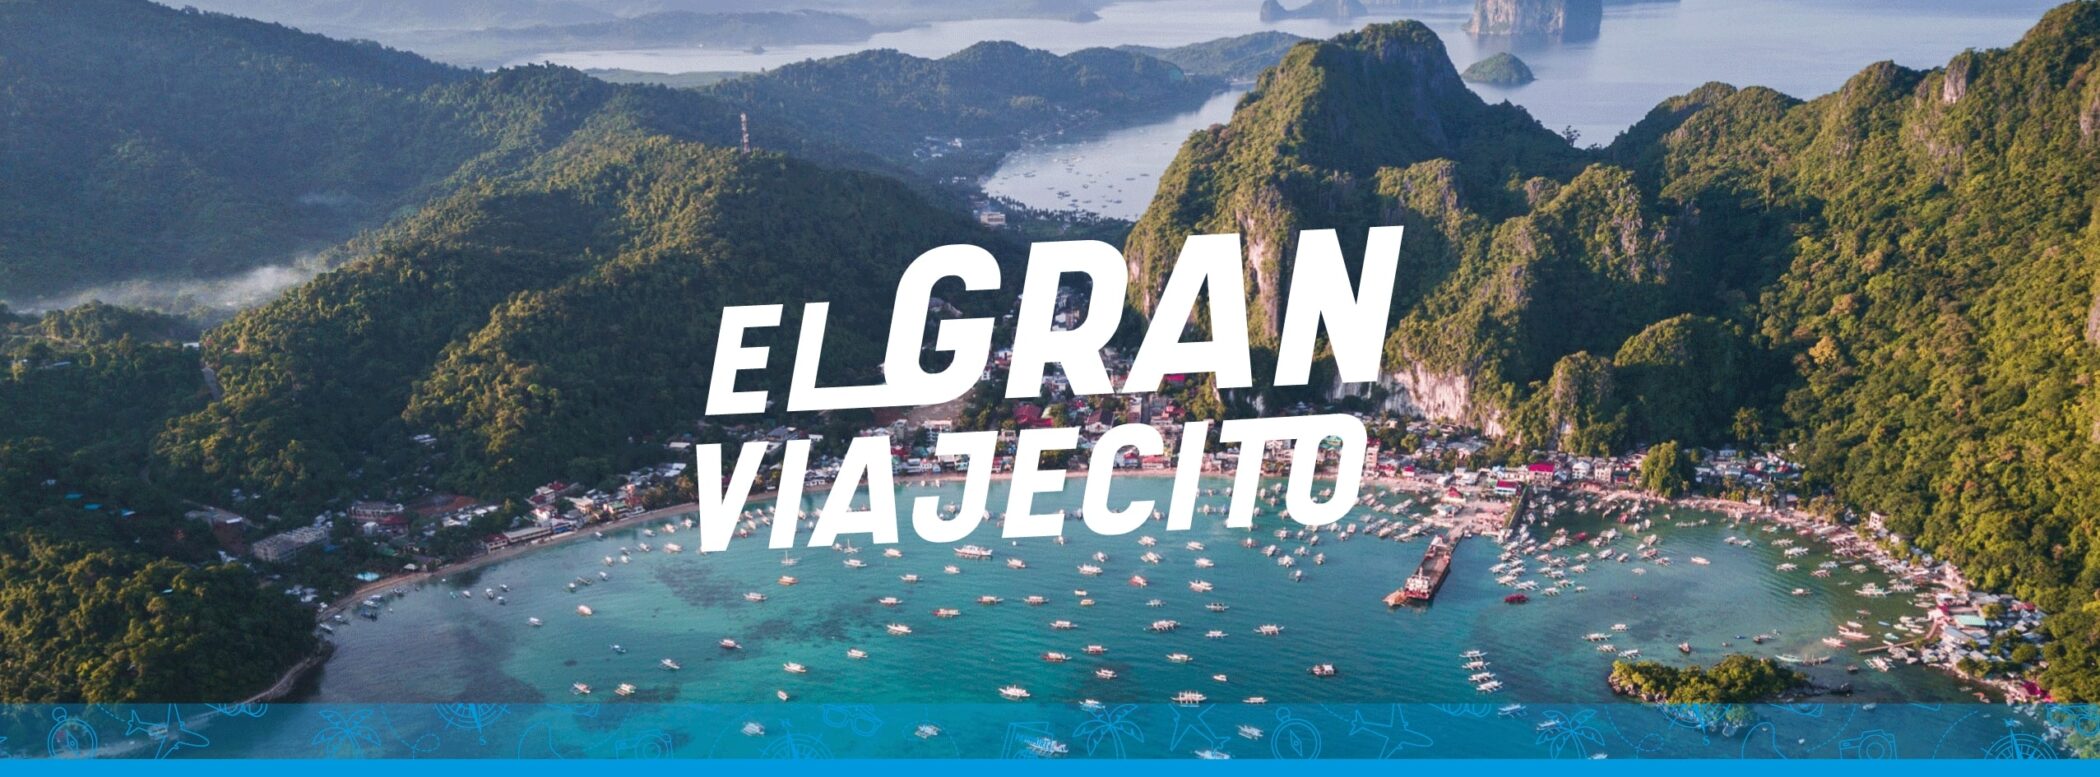 https://elgranviajecito.com/wp-content/uploads/2023/05/El-Gran-Viajecito-scaled.jpg